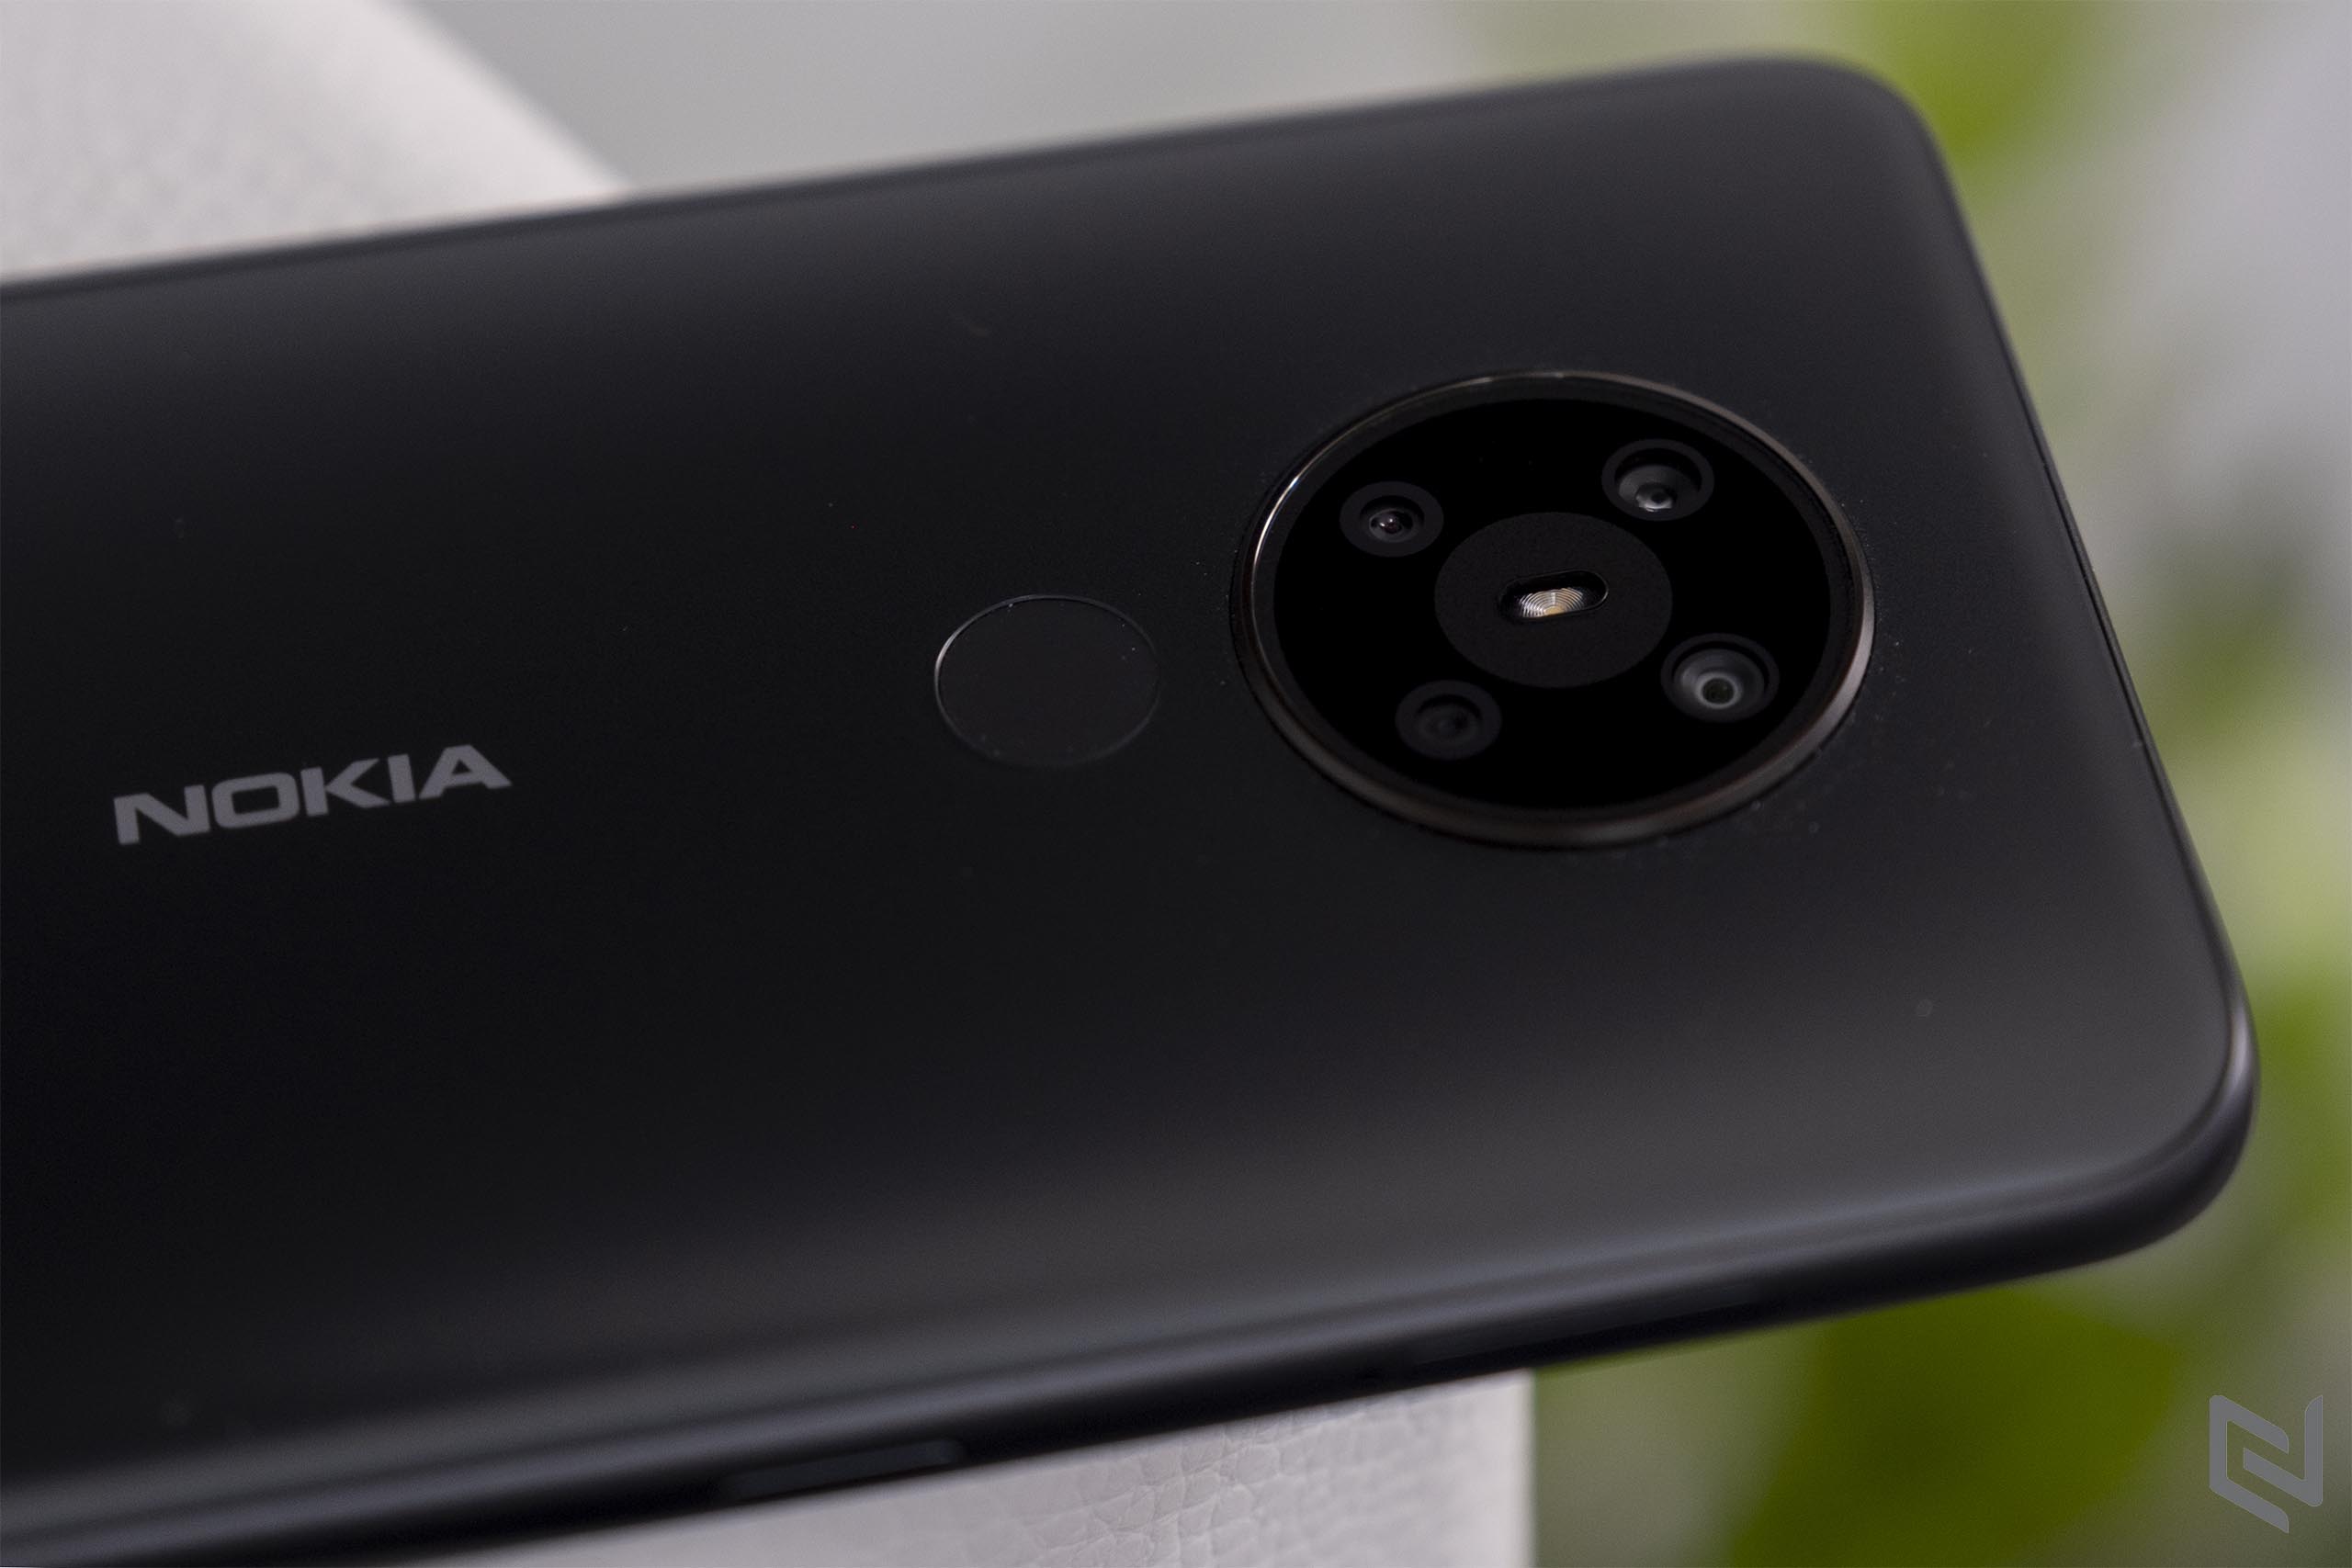 Đánh giá bộ tứ camera Nokia 5.3: Thống lĩnh phân khúc với chất lượng ảnh vượt trội và chế độ chụp đa dạng